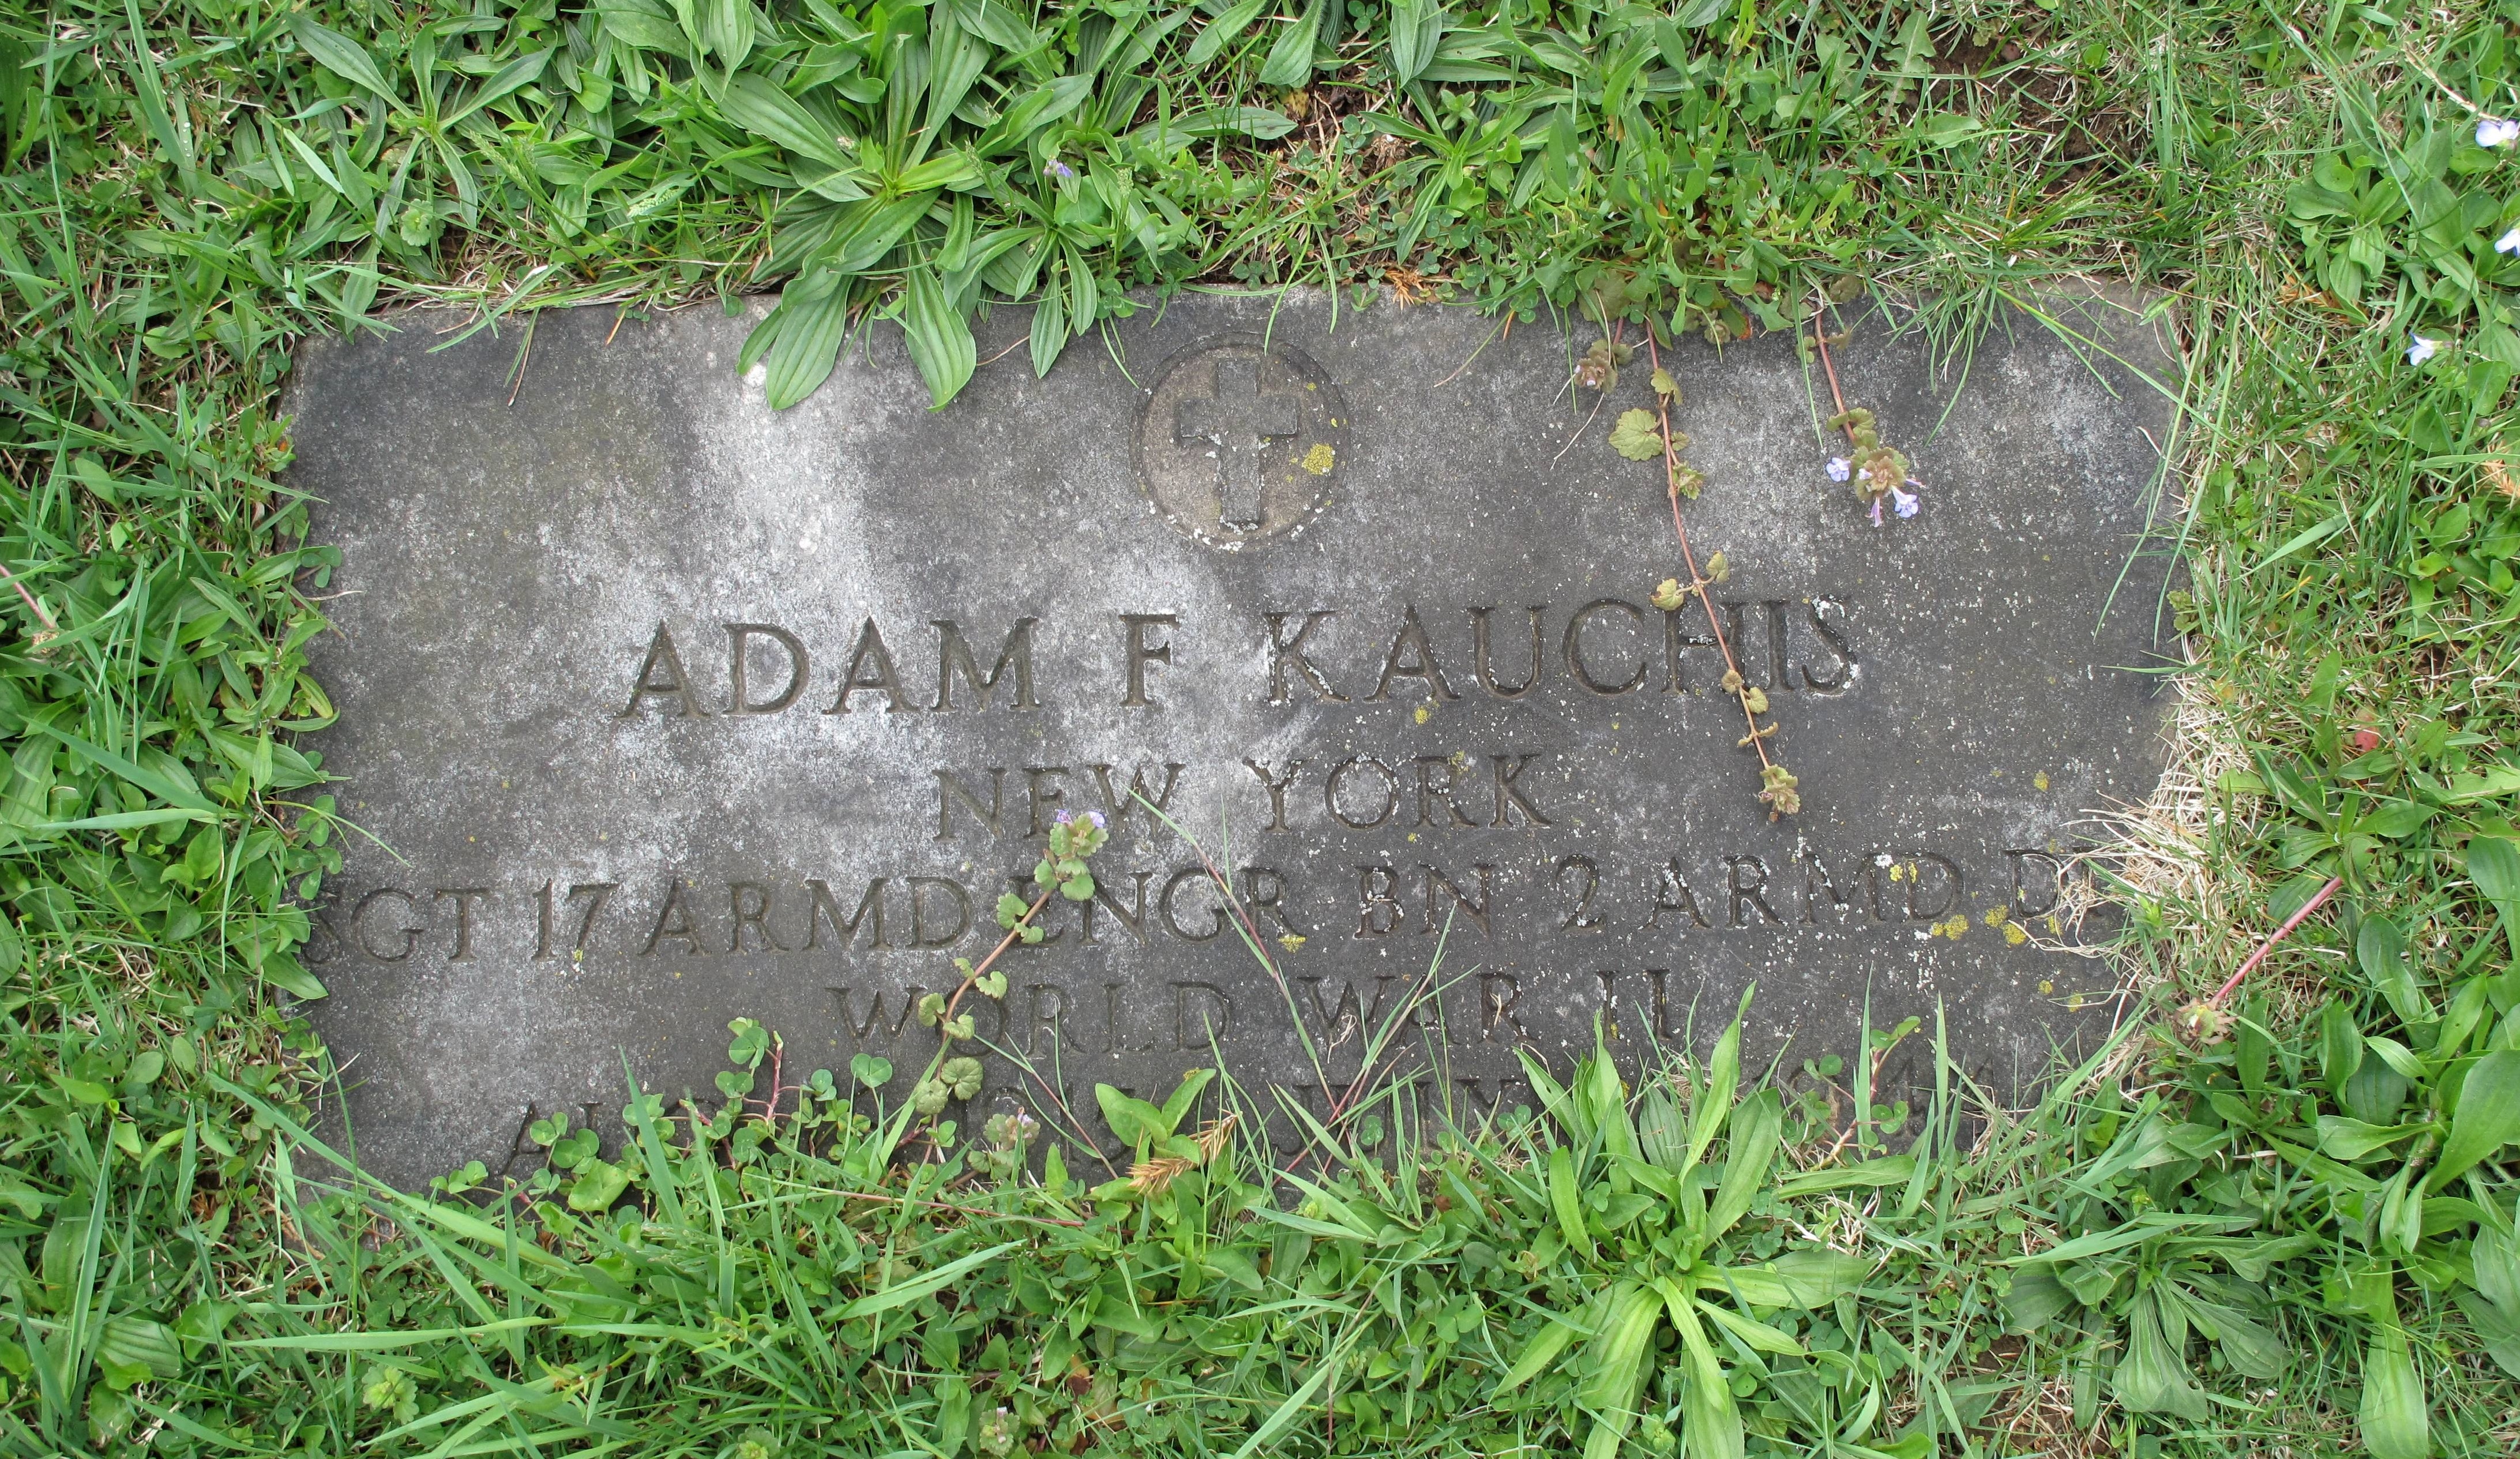 Gravestone Adam F Kauchis klein - kopie